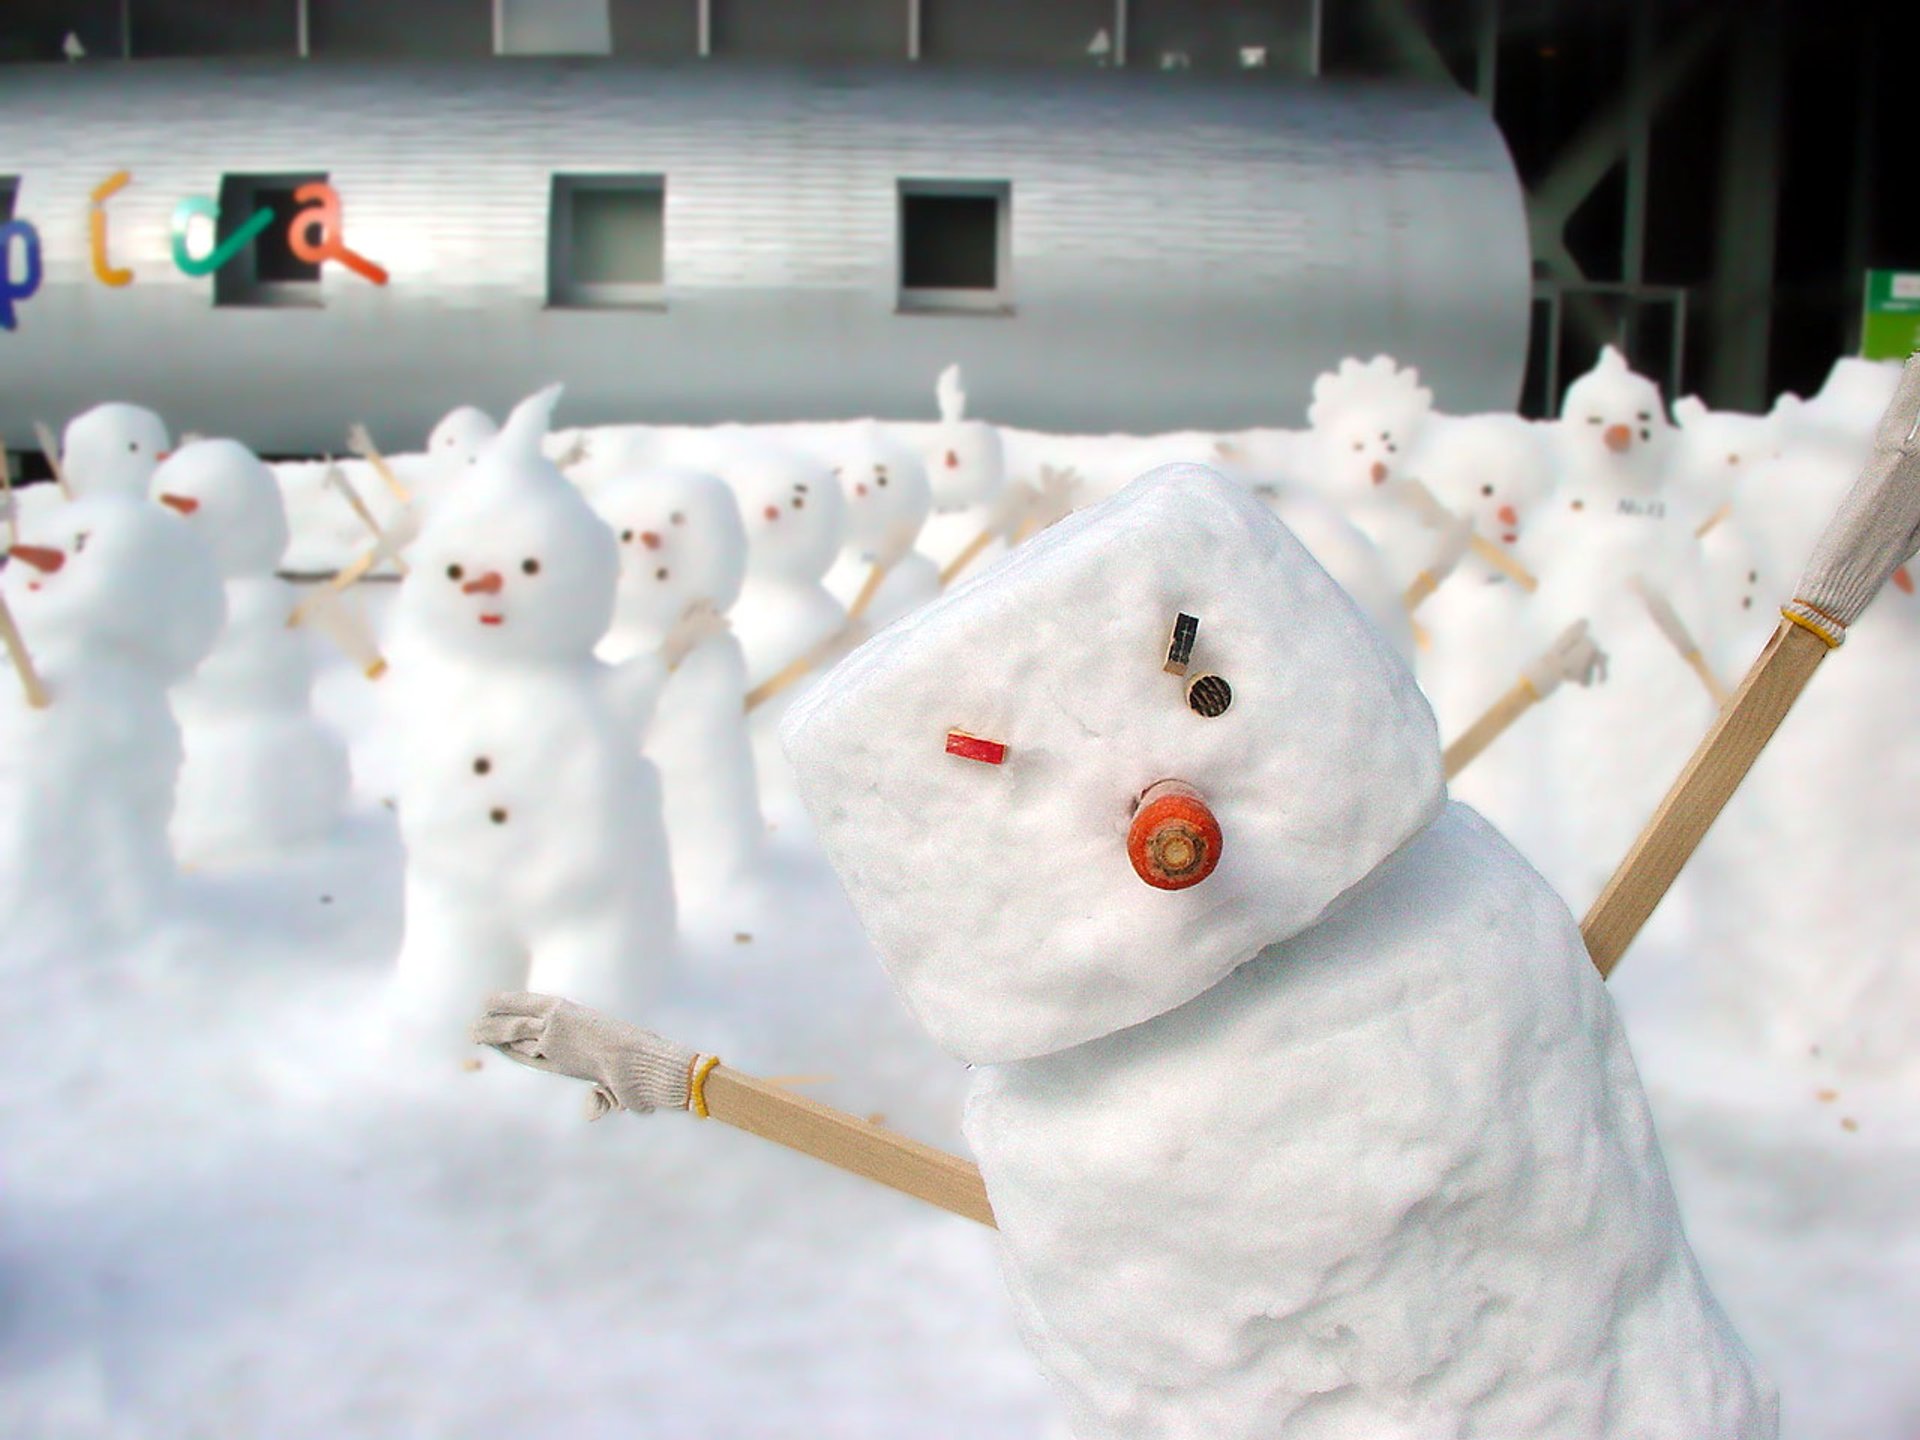 Sapporo Snow Festival